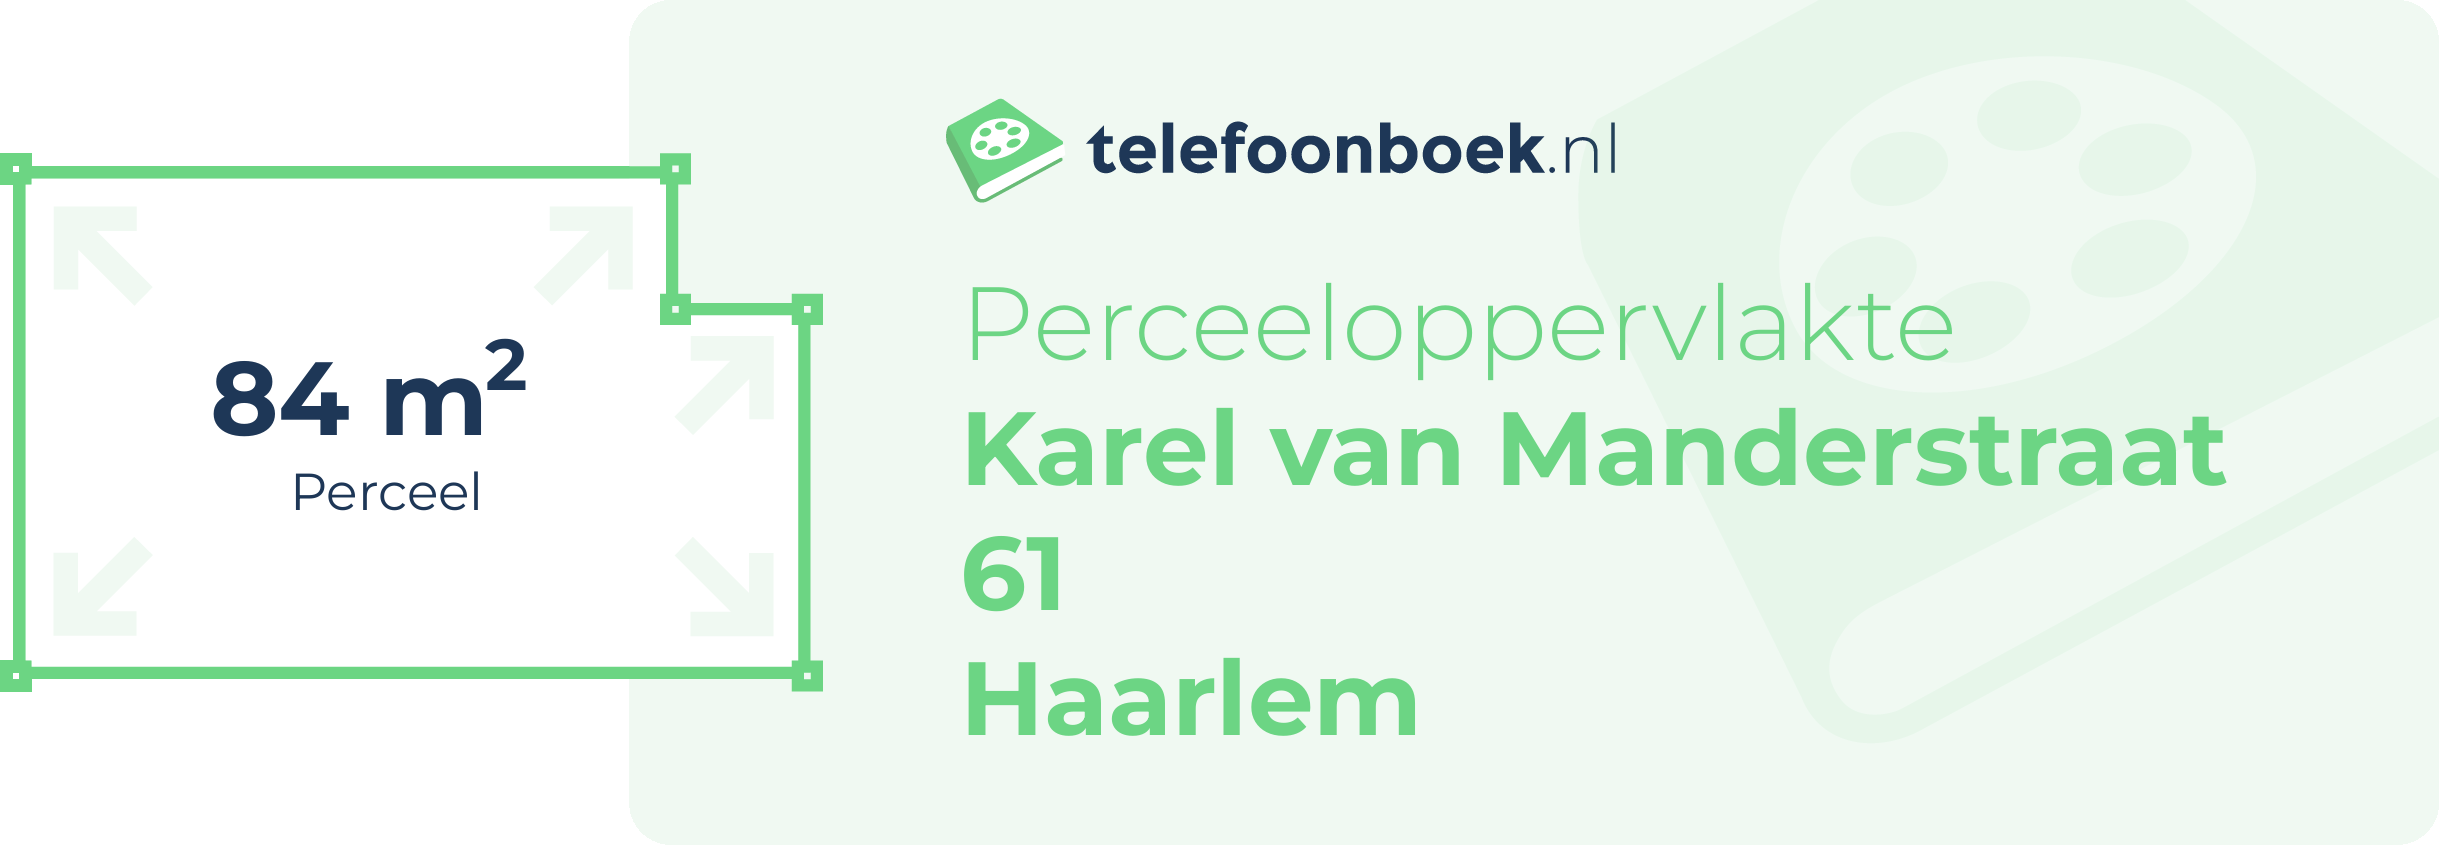 Perceeloppervlakte Karel Van Manderstraat 61 Haarlem